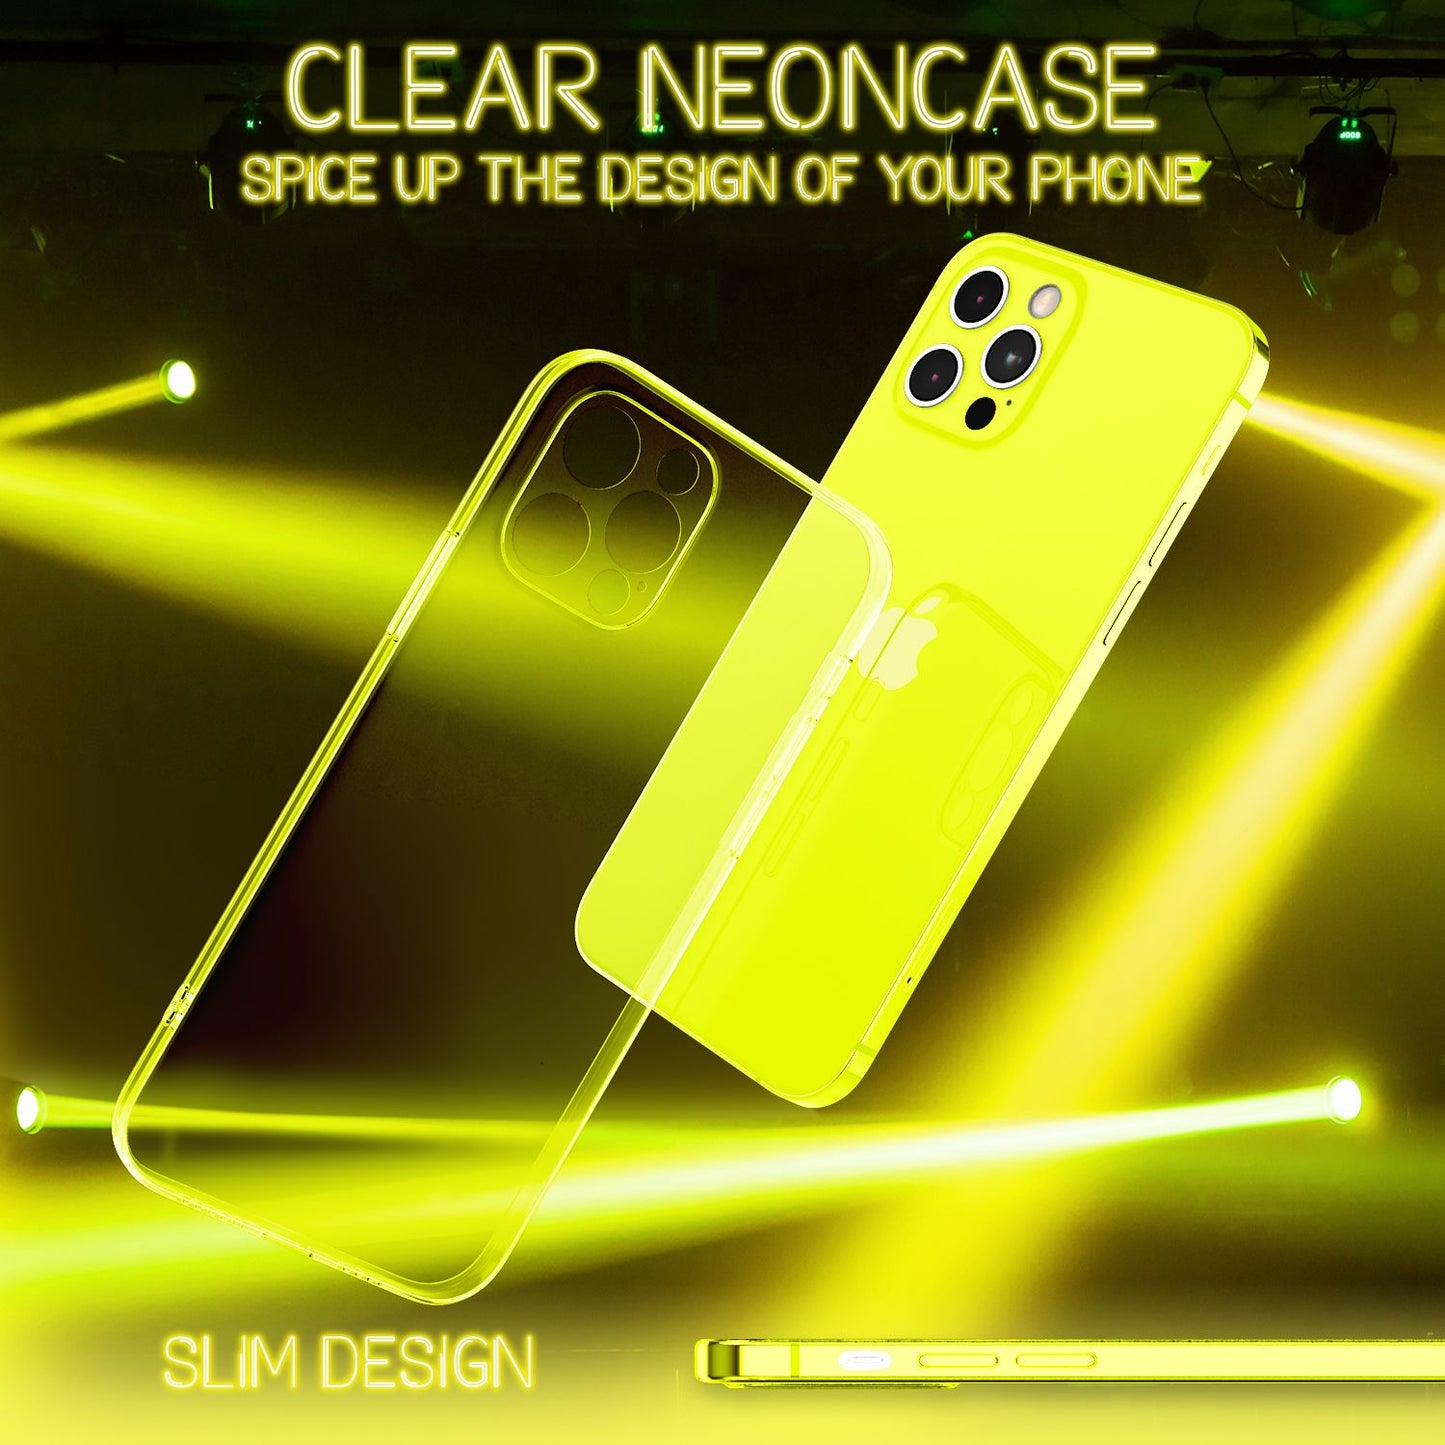 NALIA Klare Neon Handy Hülle für iPhone 12 Pro Max, Bunt Durchsichtig Cover Case